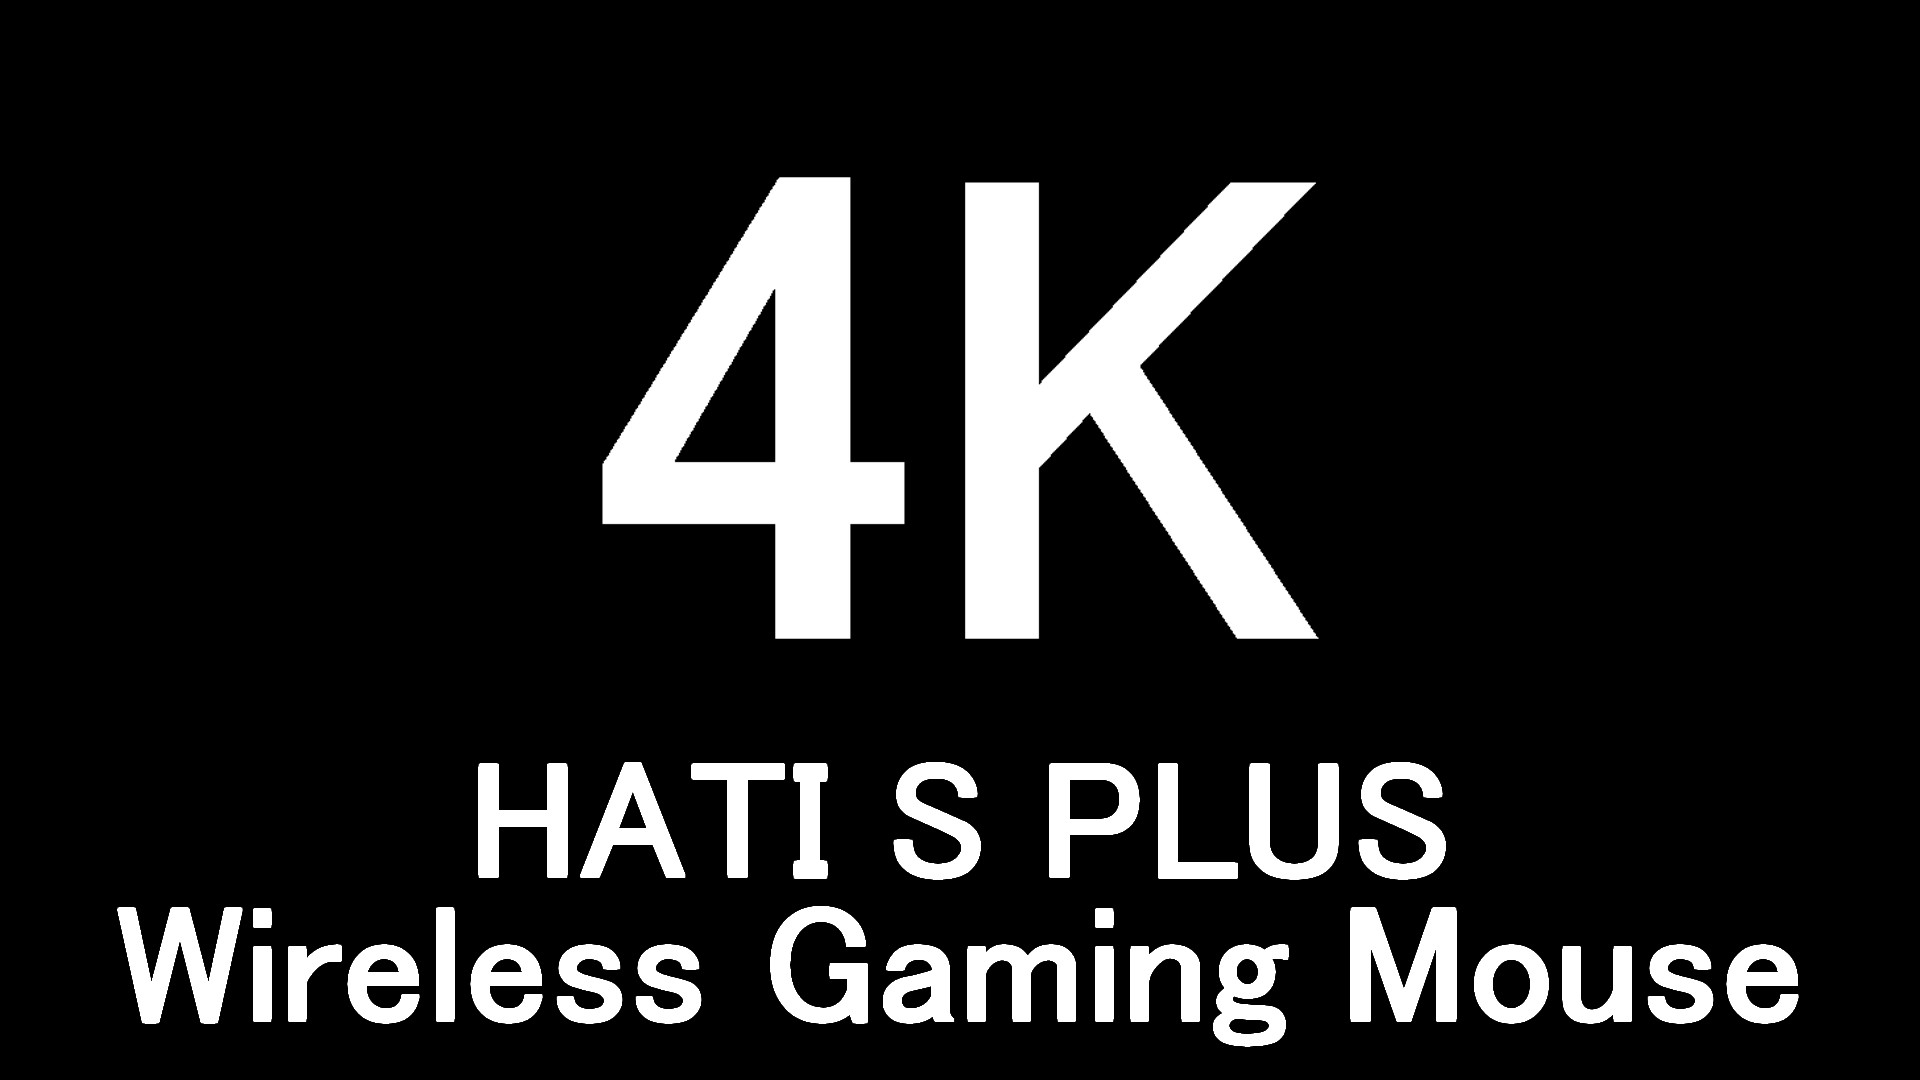 デバイス紹介】HTS Plus 4K Wireless Gaming Mouse│NCC 新潟